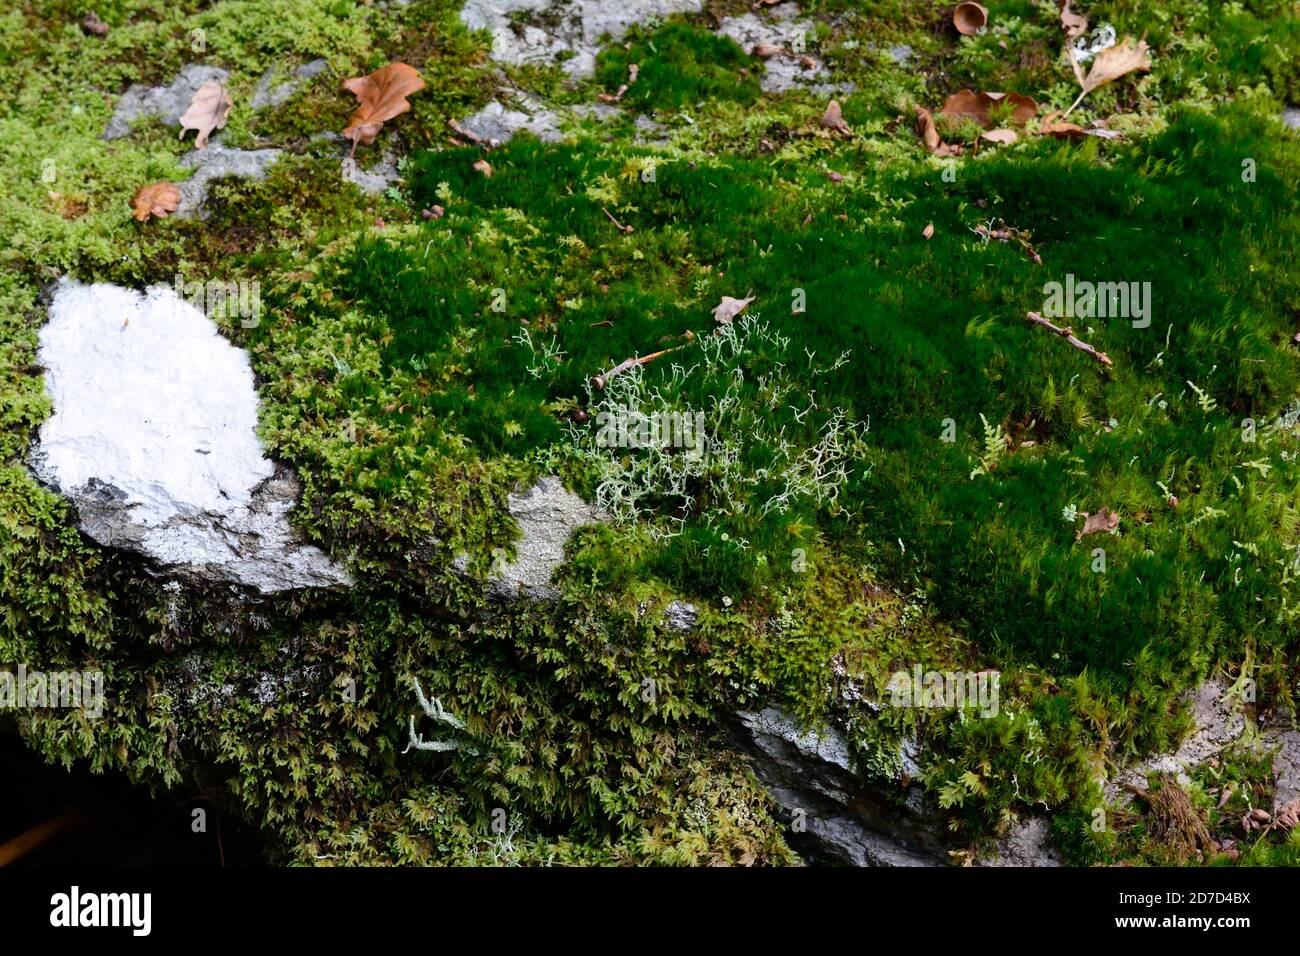 La mousse et le lichen ont couvert un rocher sur un plancher de bois Ty Canol Woods pembrokeshire pays de Galles Cymru Royaume-Uni Banque D'Images